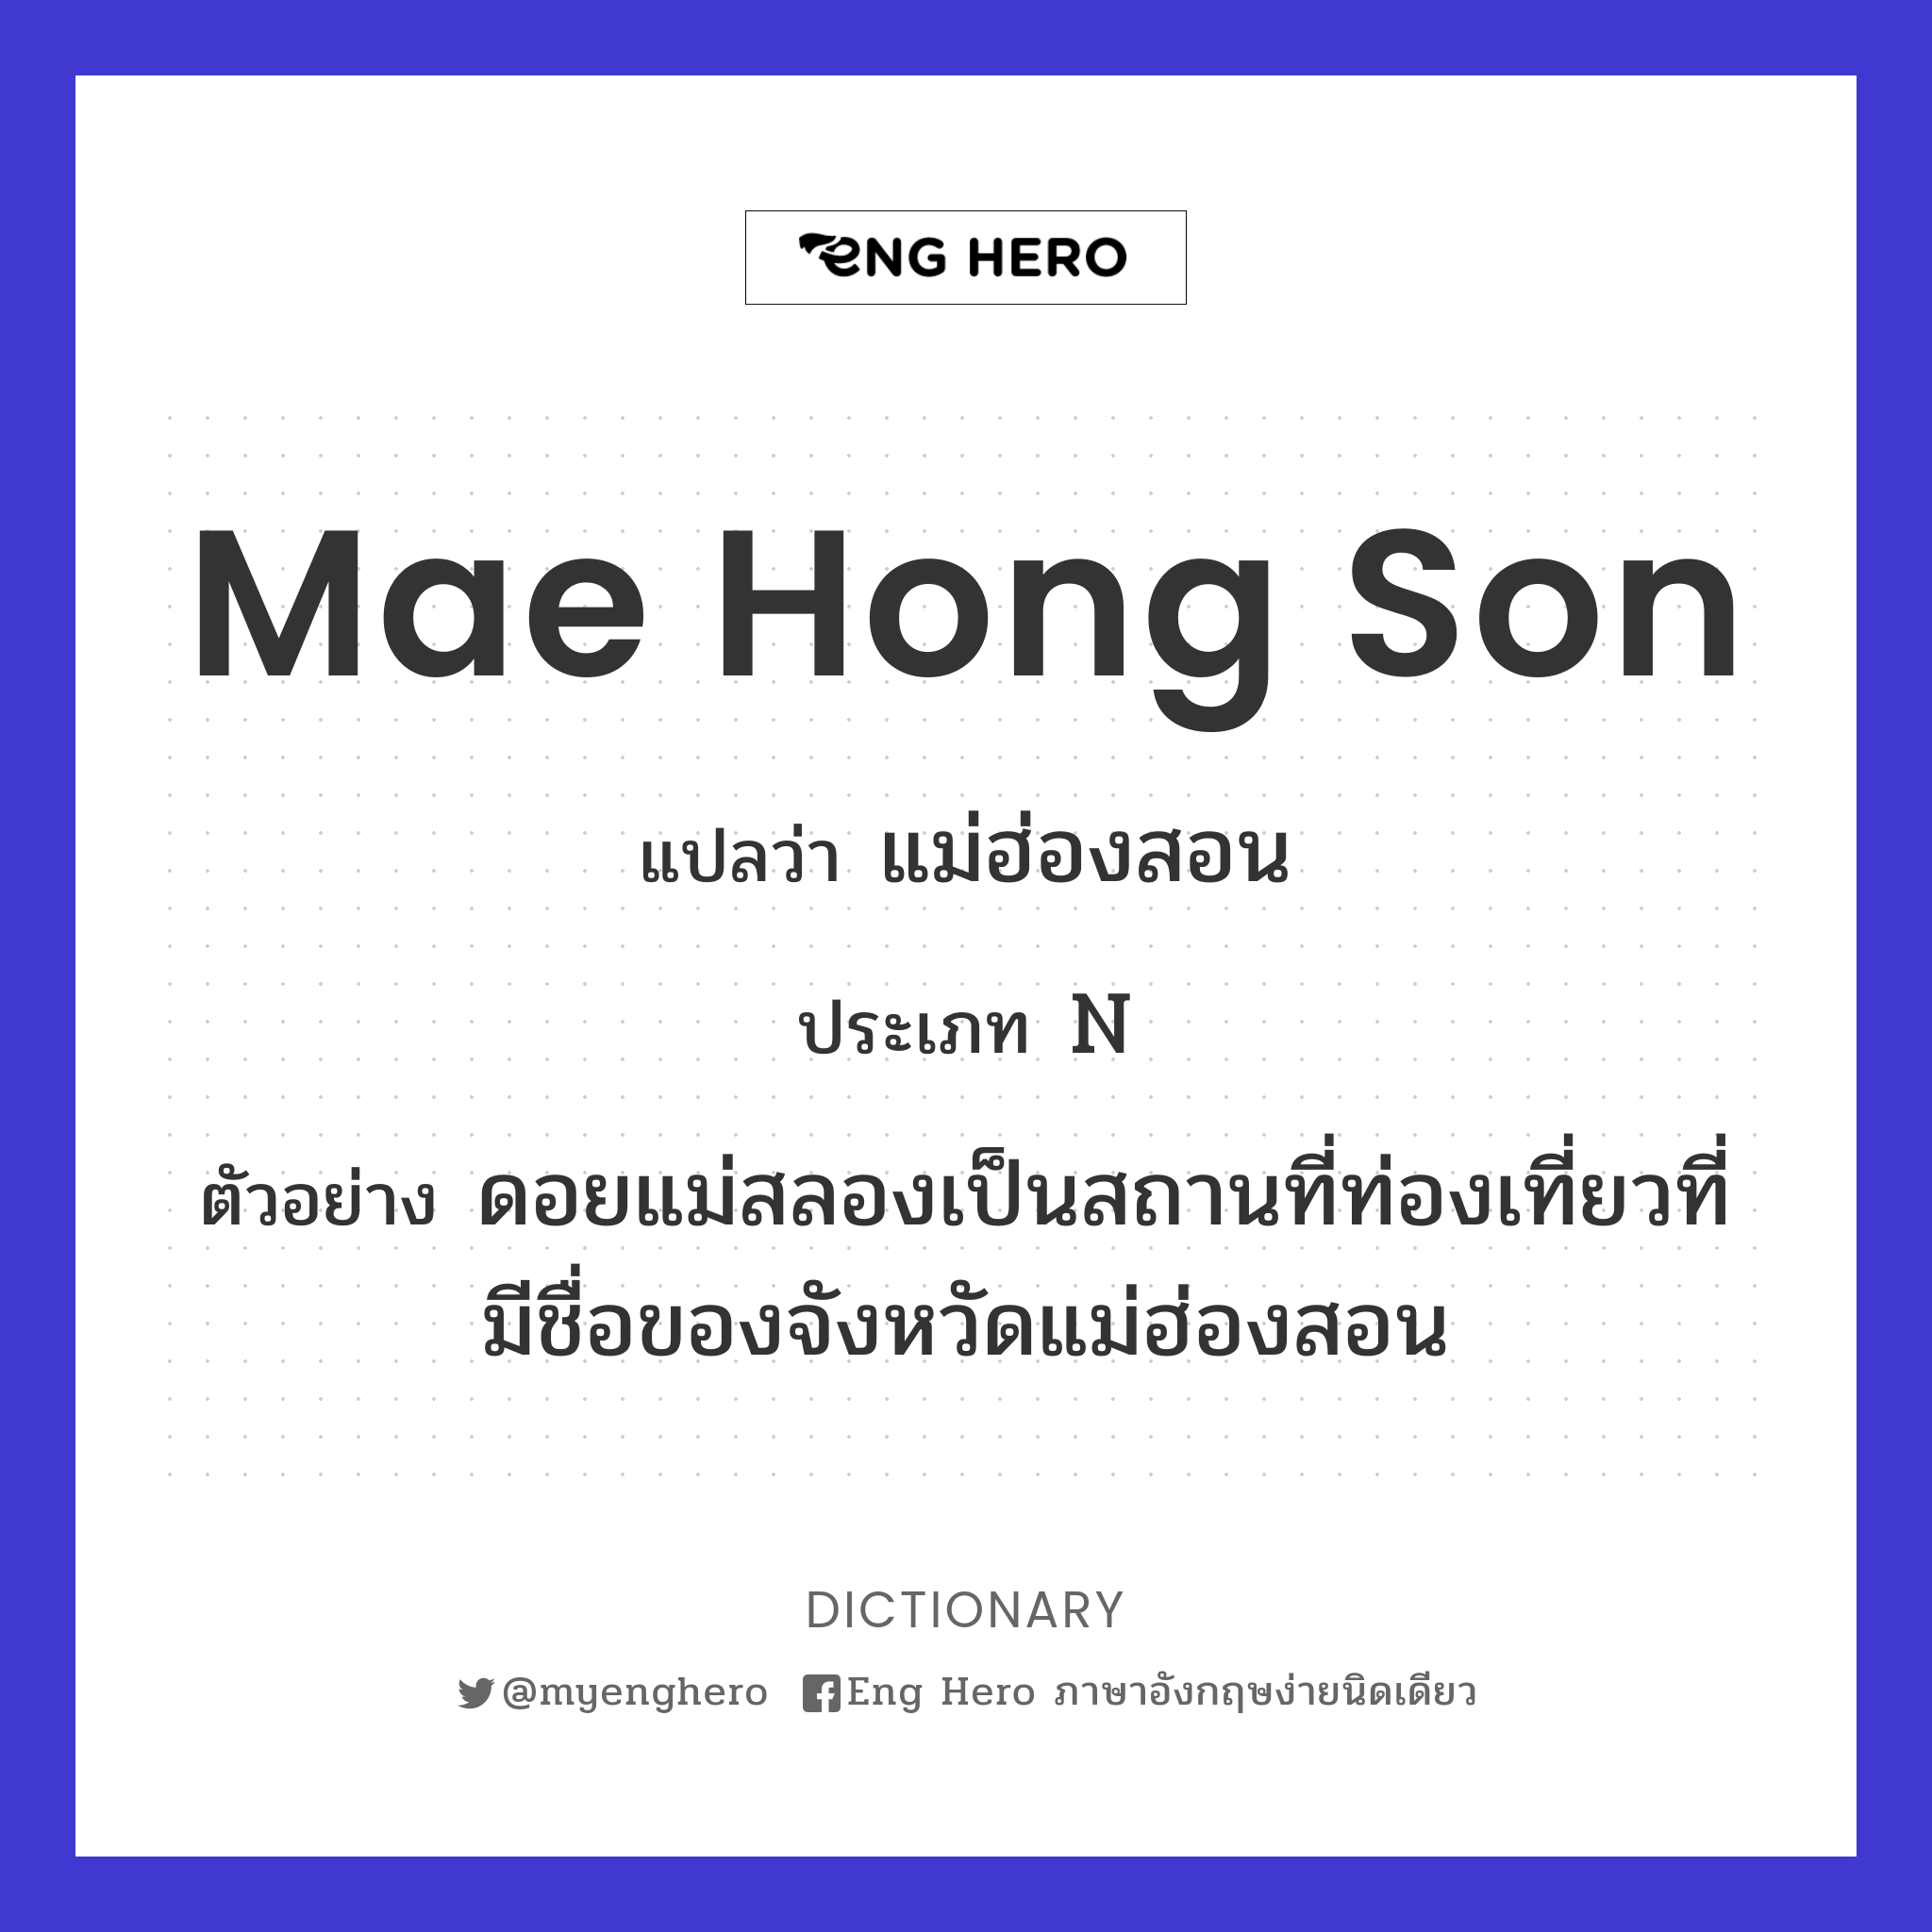 Mae Hong Son